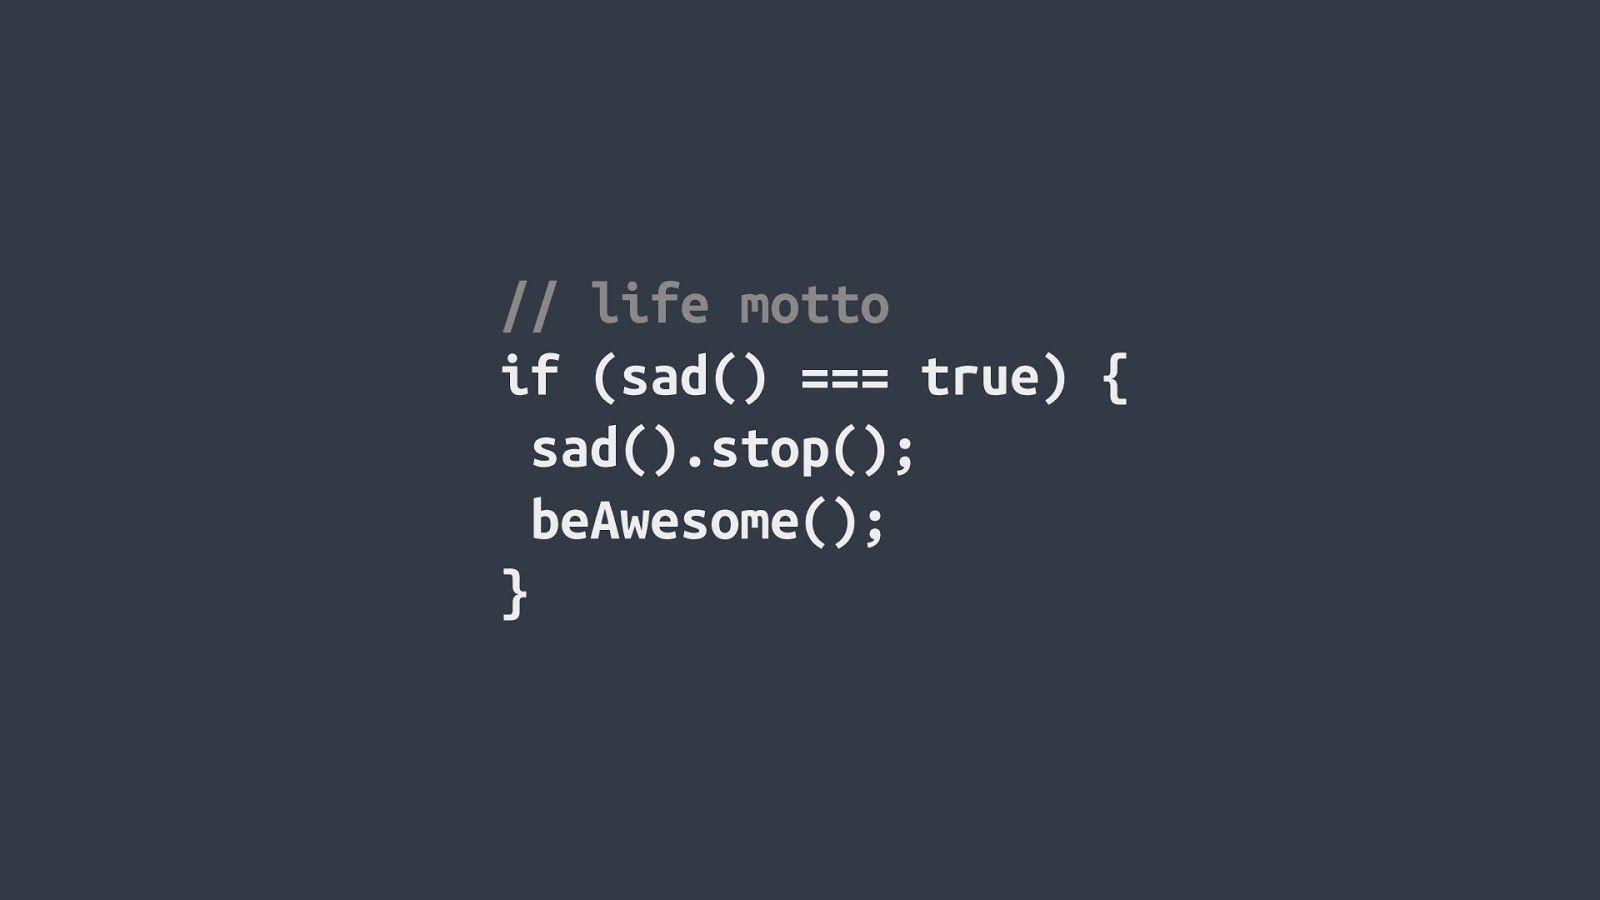 Beautiful Life Motto By Programming Language Wallpaper. Beautiful